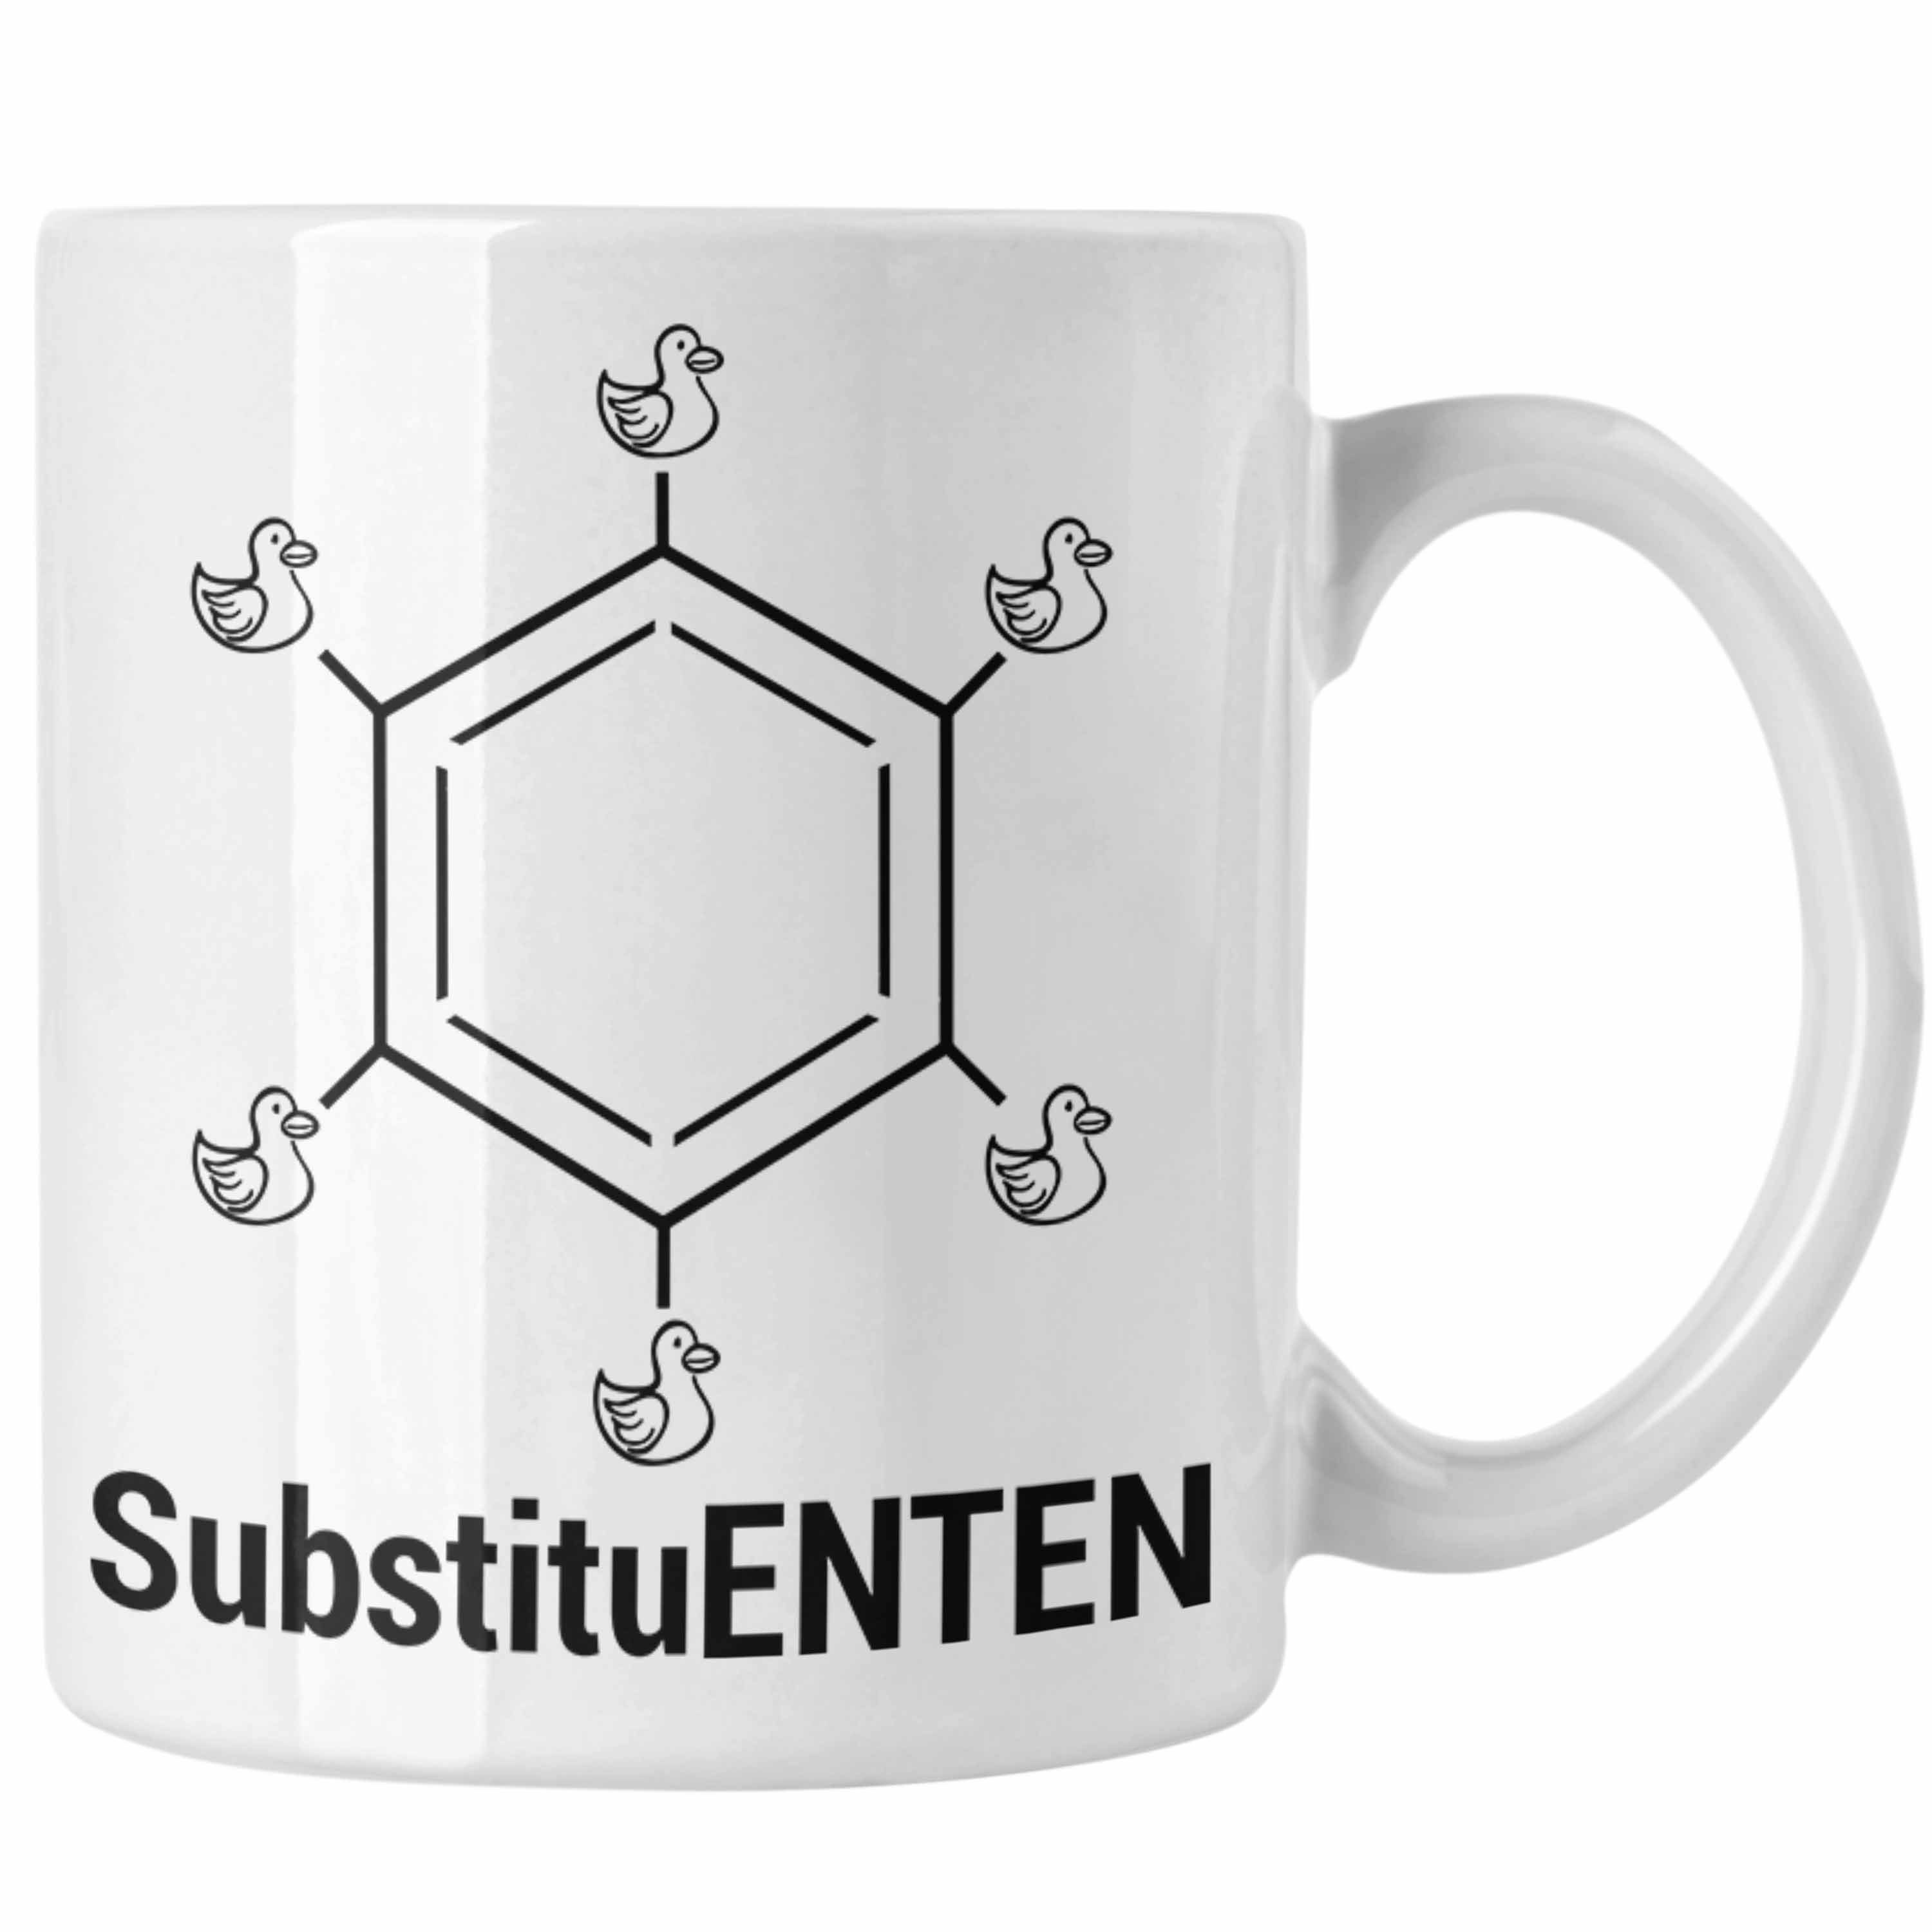 Trendation Tasse Chemie Tasse SubstituENTEN Chemiker Witz Organische Chemie Ente Kaffee Weiss